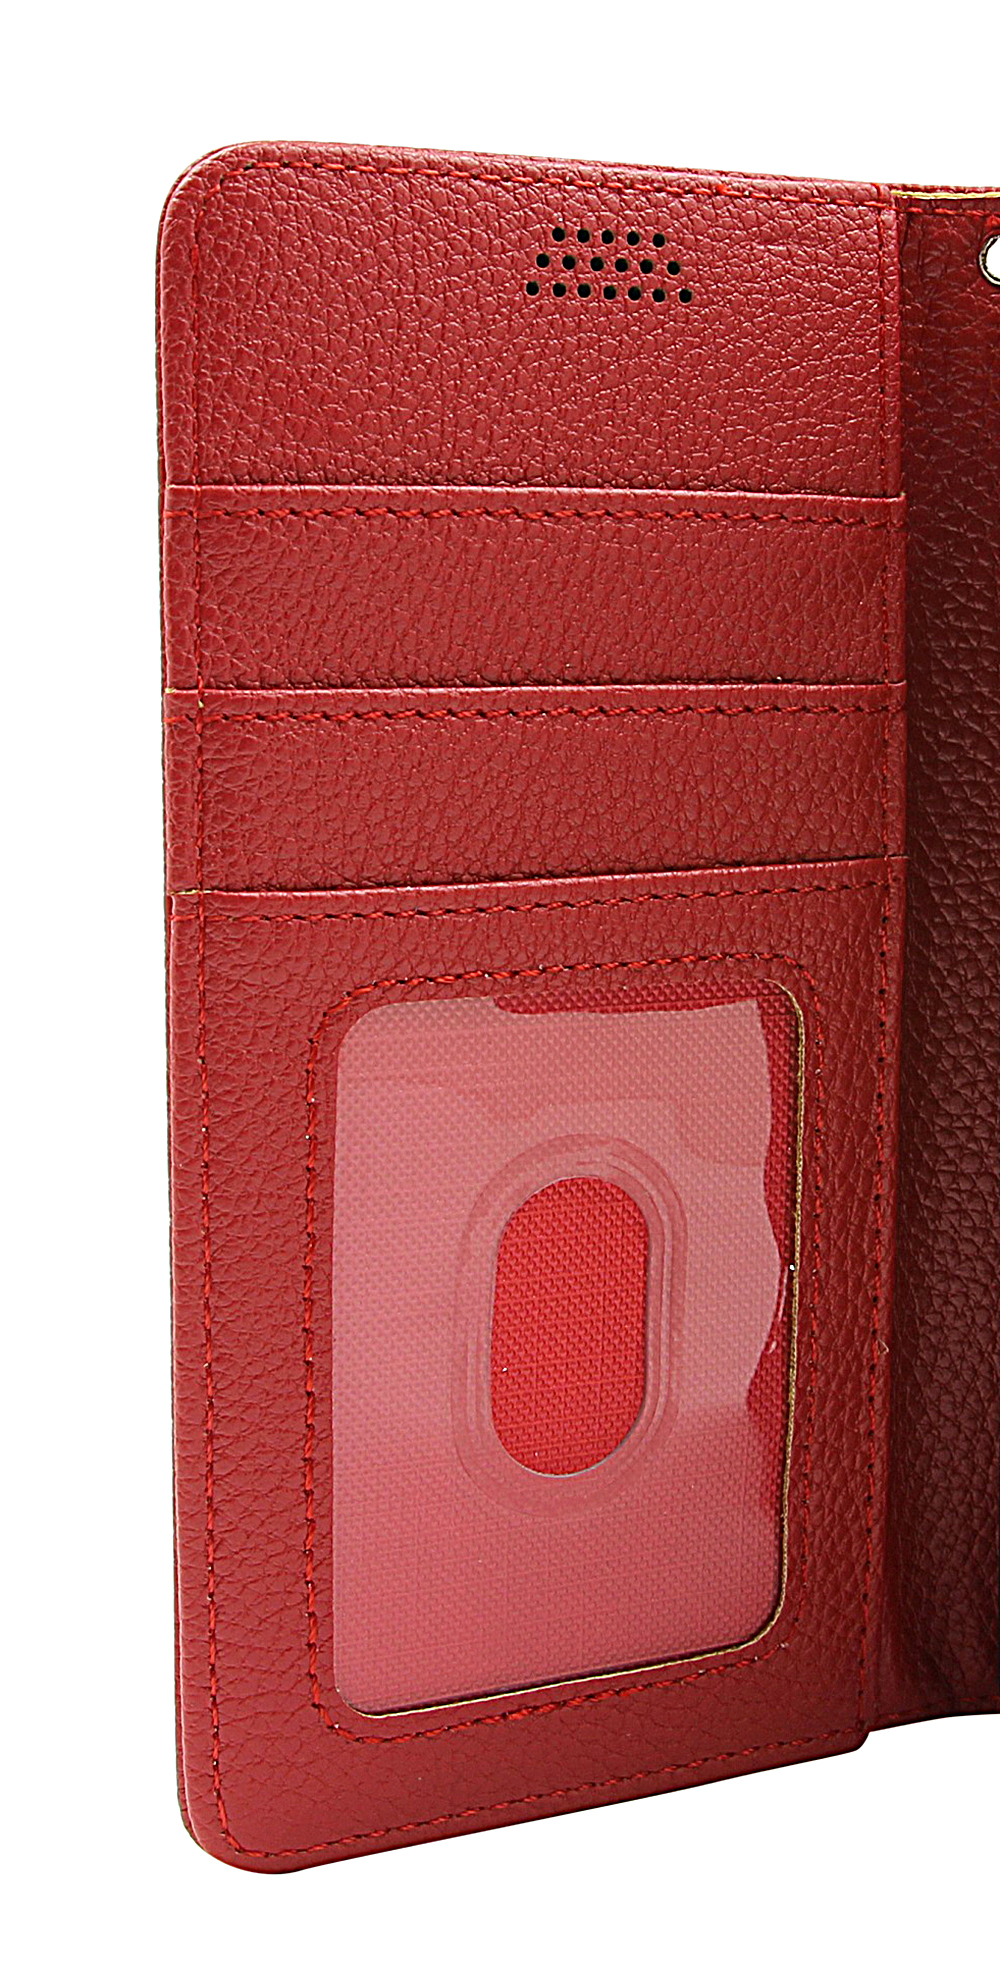 billigamobilskydd.seNew Standcase Wallet Sony Xperia 1 V 5G (XQ-DQ72)